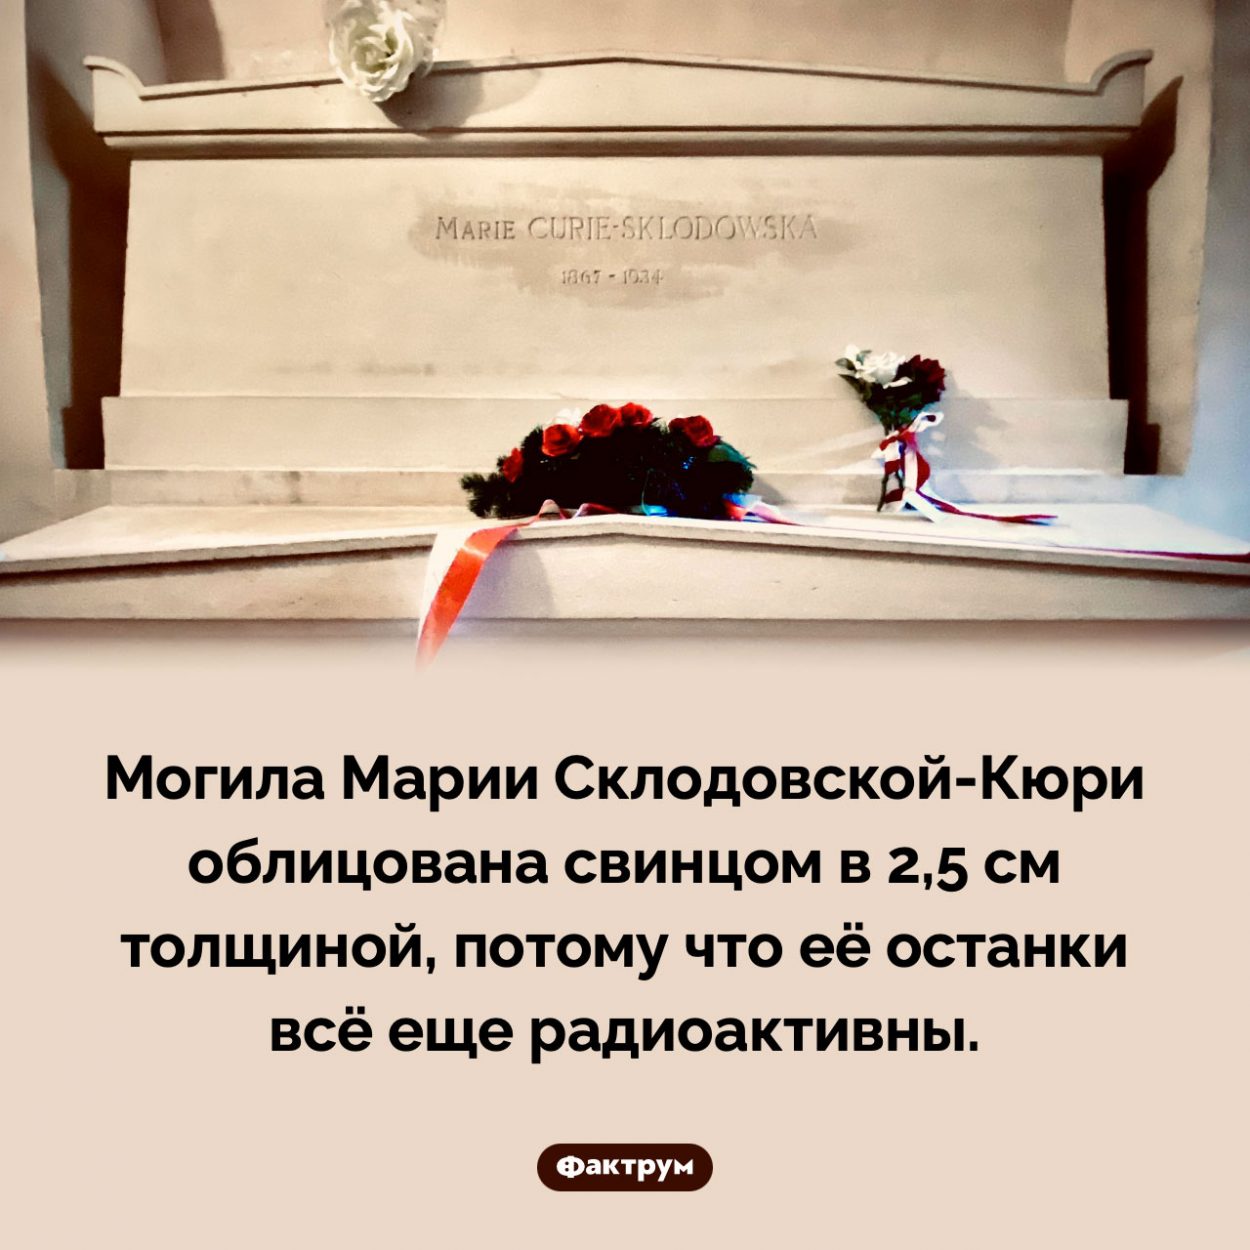 Могила Марии Склодовской-Кюри. Могила Марии Склодовской-Кюри облицована свинцом в 2,5 см толщиной, потому что её останки всё еще радиоактивны.